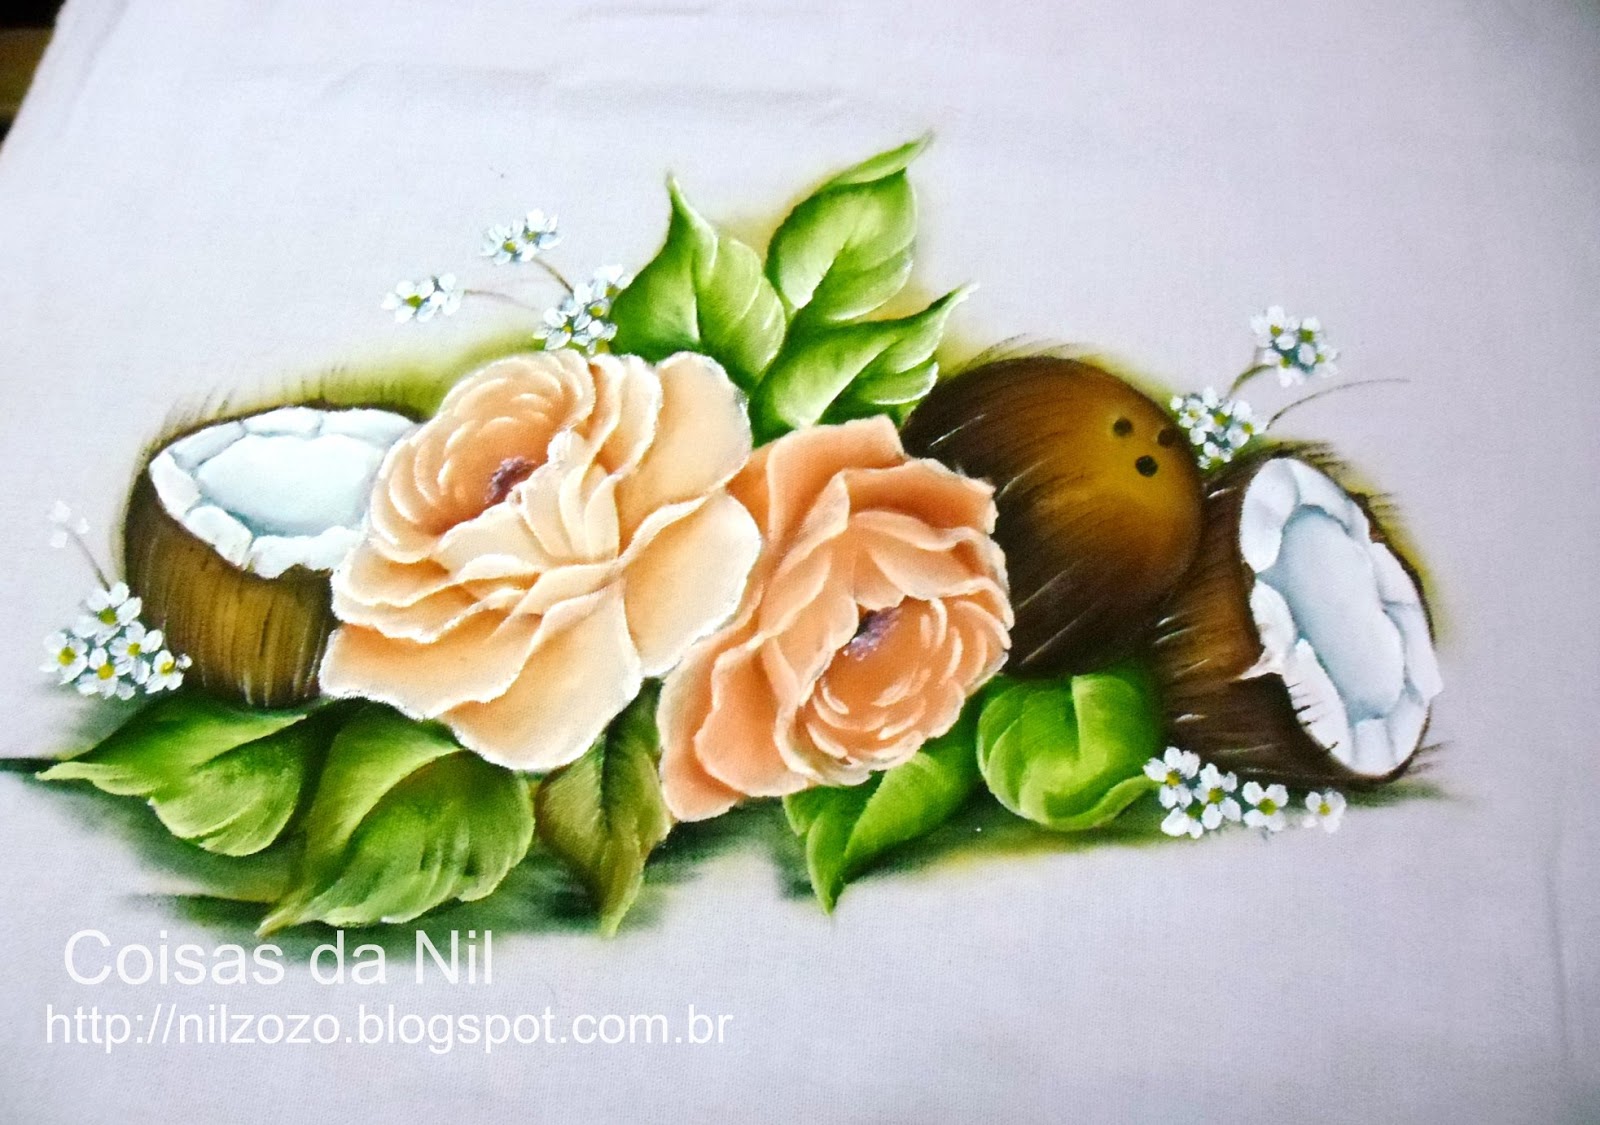 Coisas da Nil - Pintura em tecido: Cocos e rosas